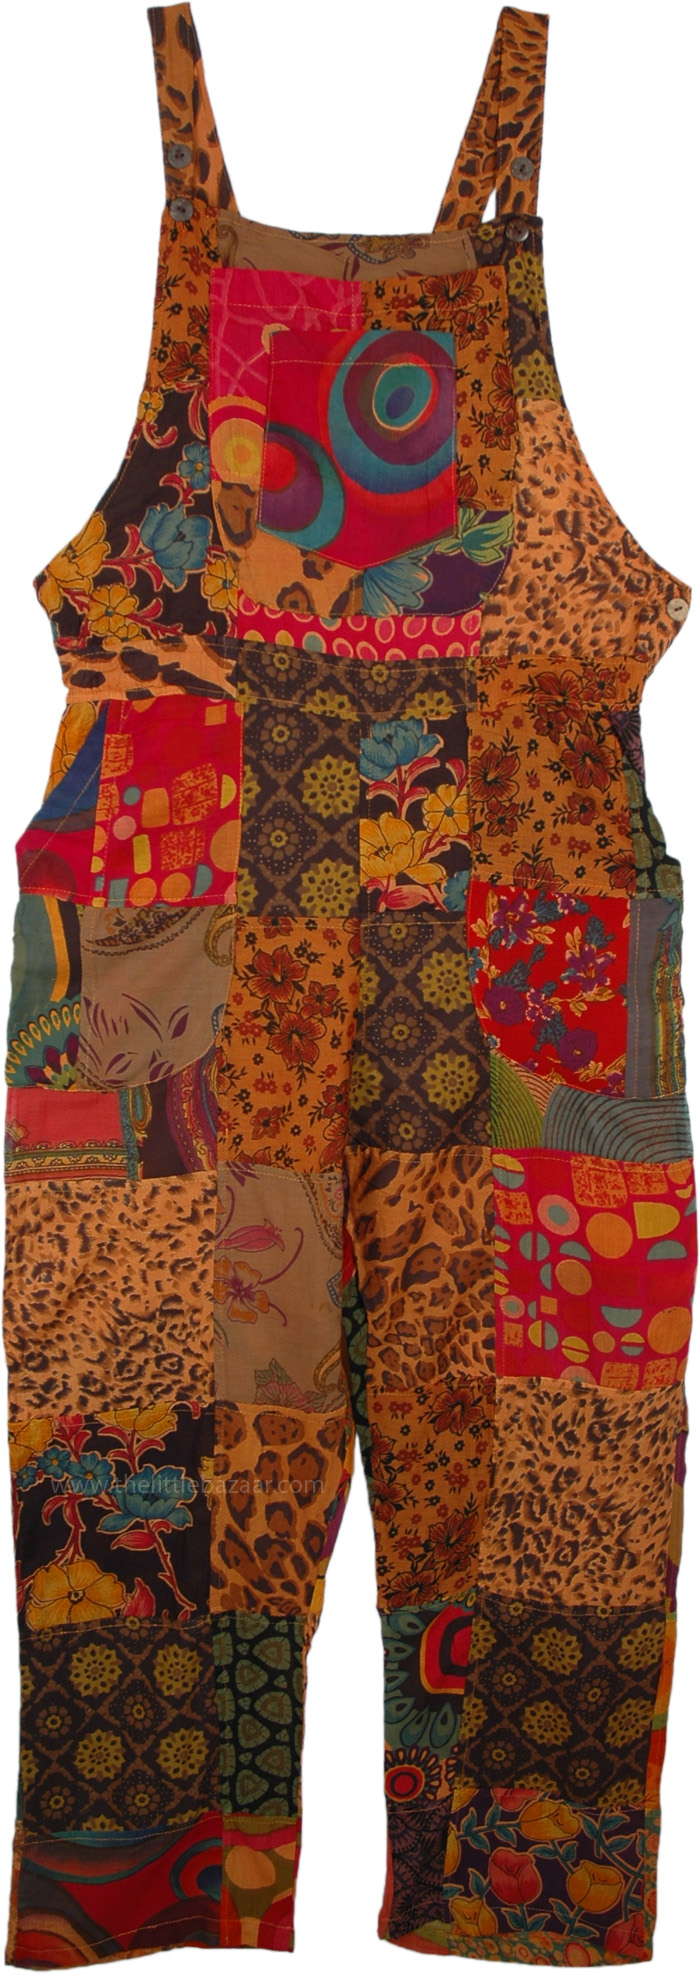 Dusk Safari Hippie Patchwork Cotton Overalls Jumpsuit